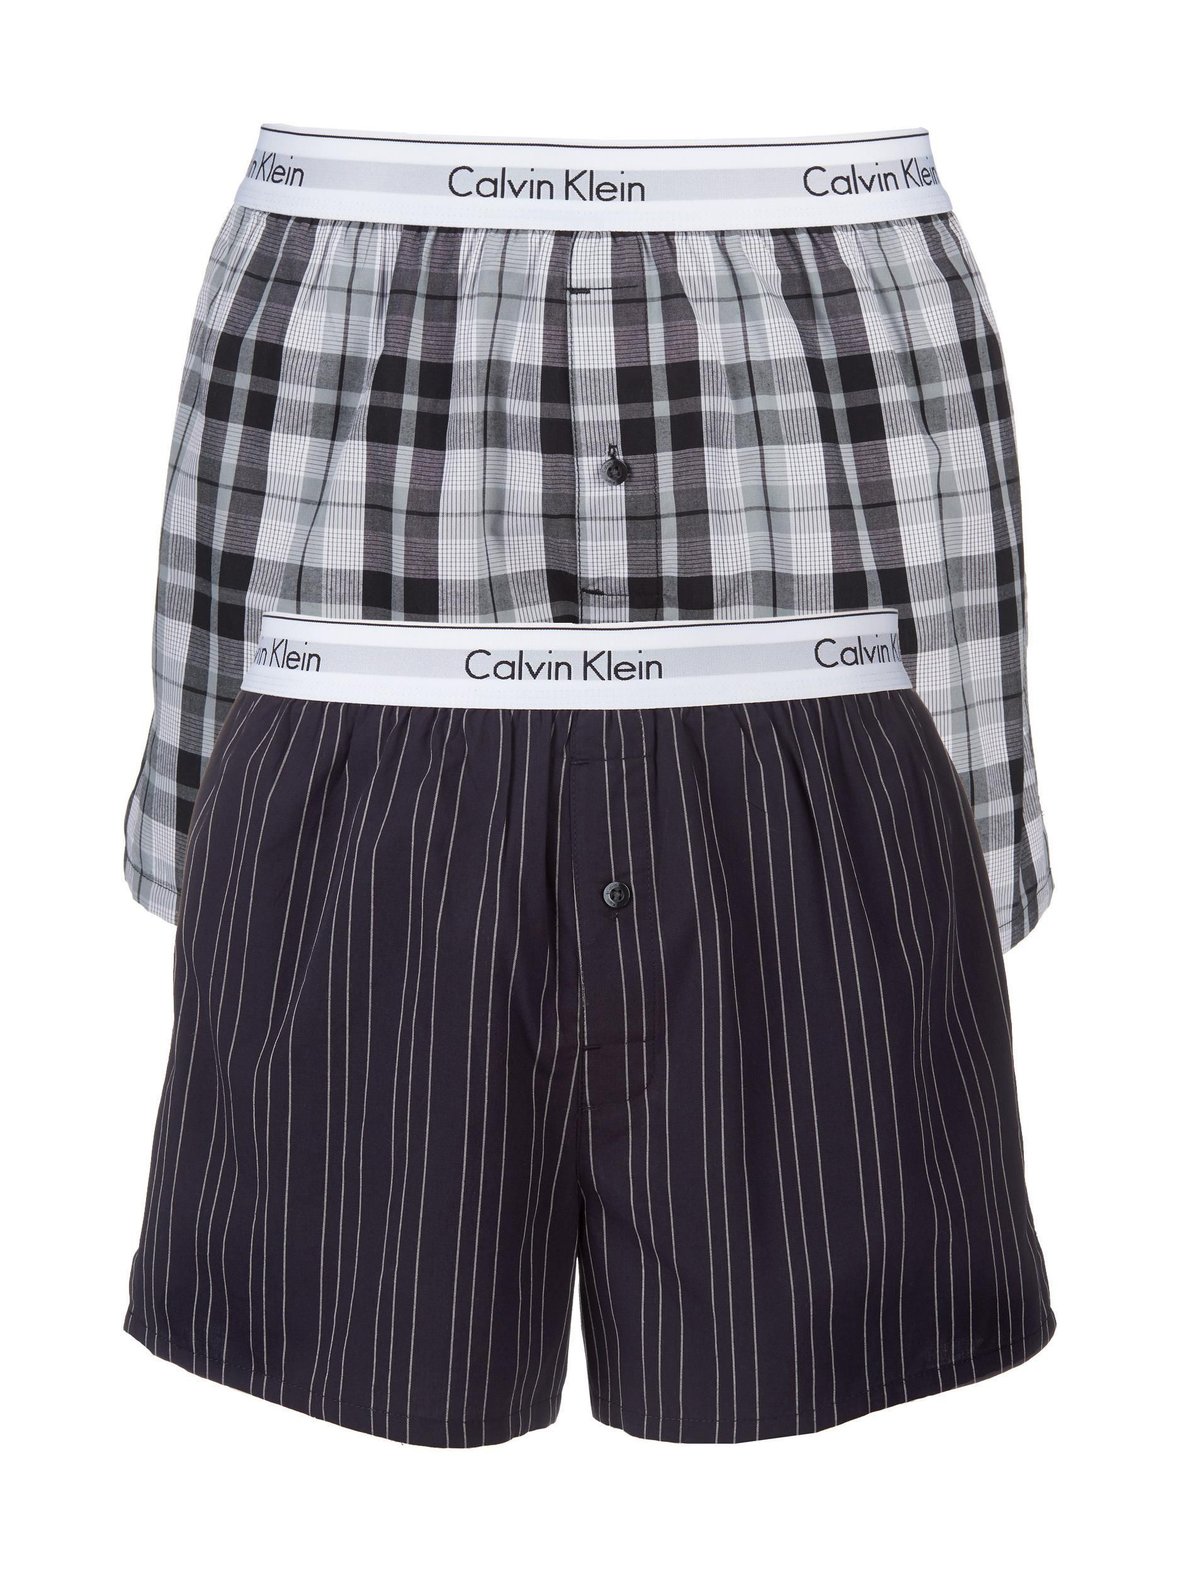 Calvin Klein Underwear Modern cotton stretch -bokserit 2-pack